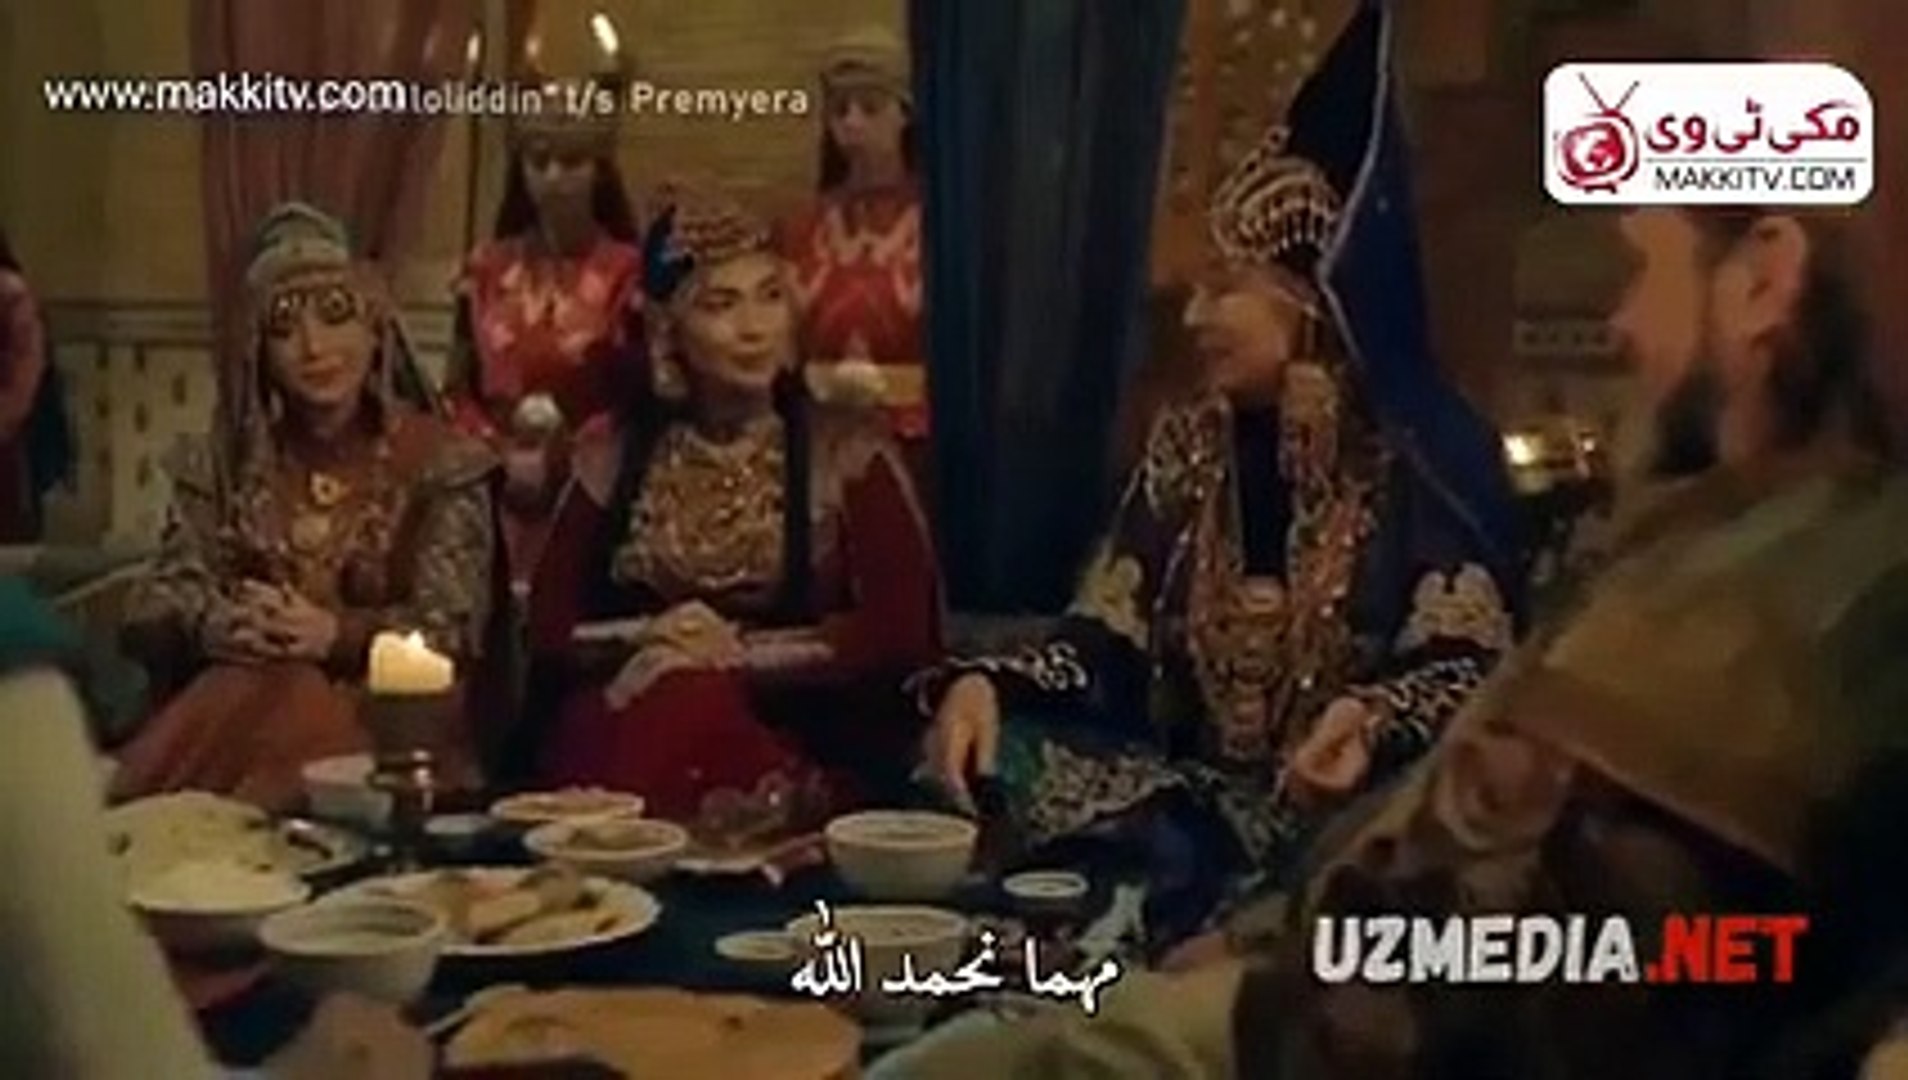 جلال الدين خوارزم شاة الحلقة 1 القسم الاول مترجم للعربية - فيديو Dailymotion